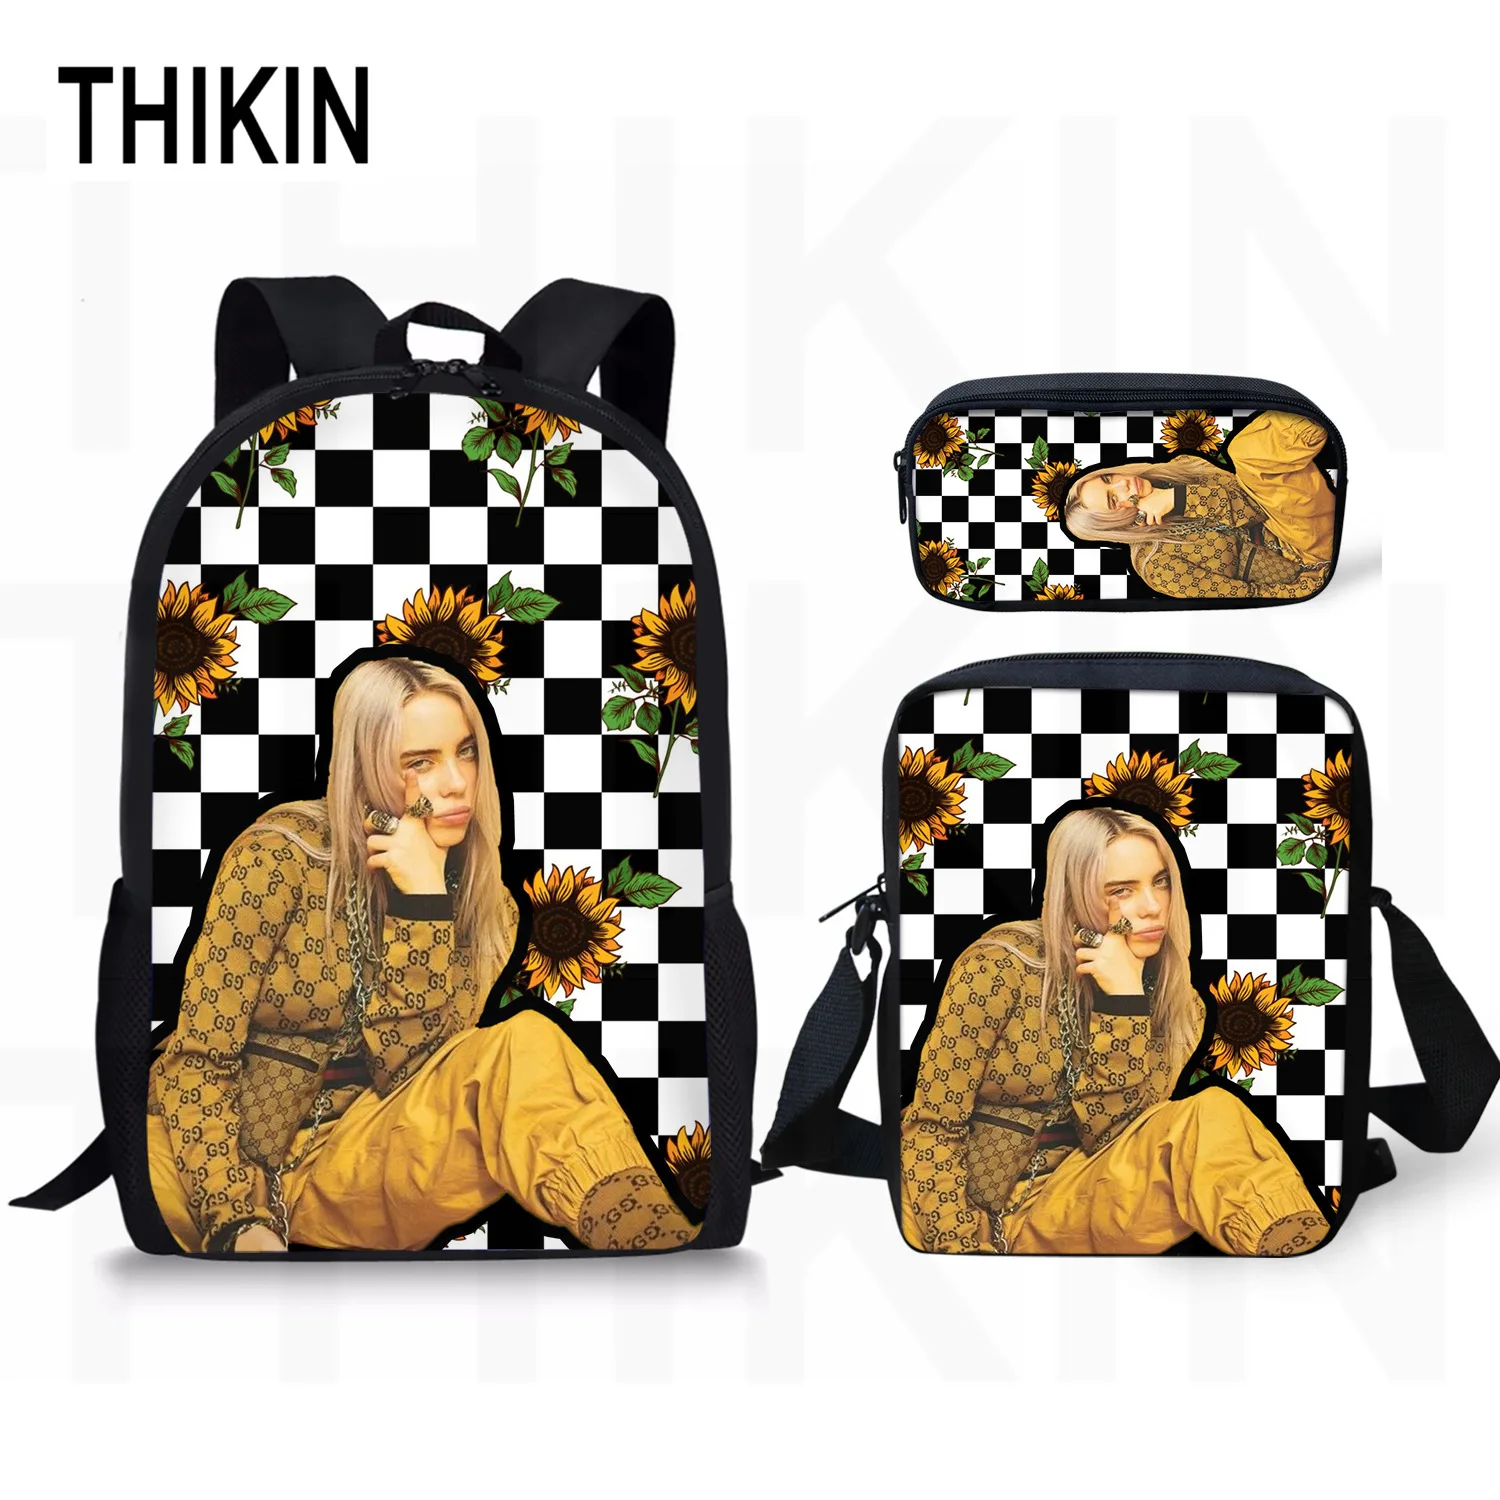 Тикин Билли эйлиш печать школьные Baags для подростков крутая Мода для девочек 3 шт./компл. детские школьные рюкзаки для девочек повседневные Mochila - Цвет: As picture